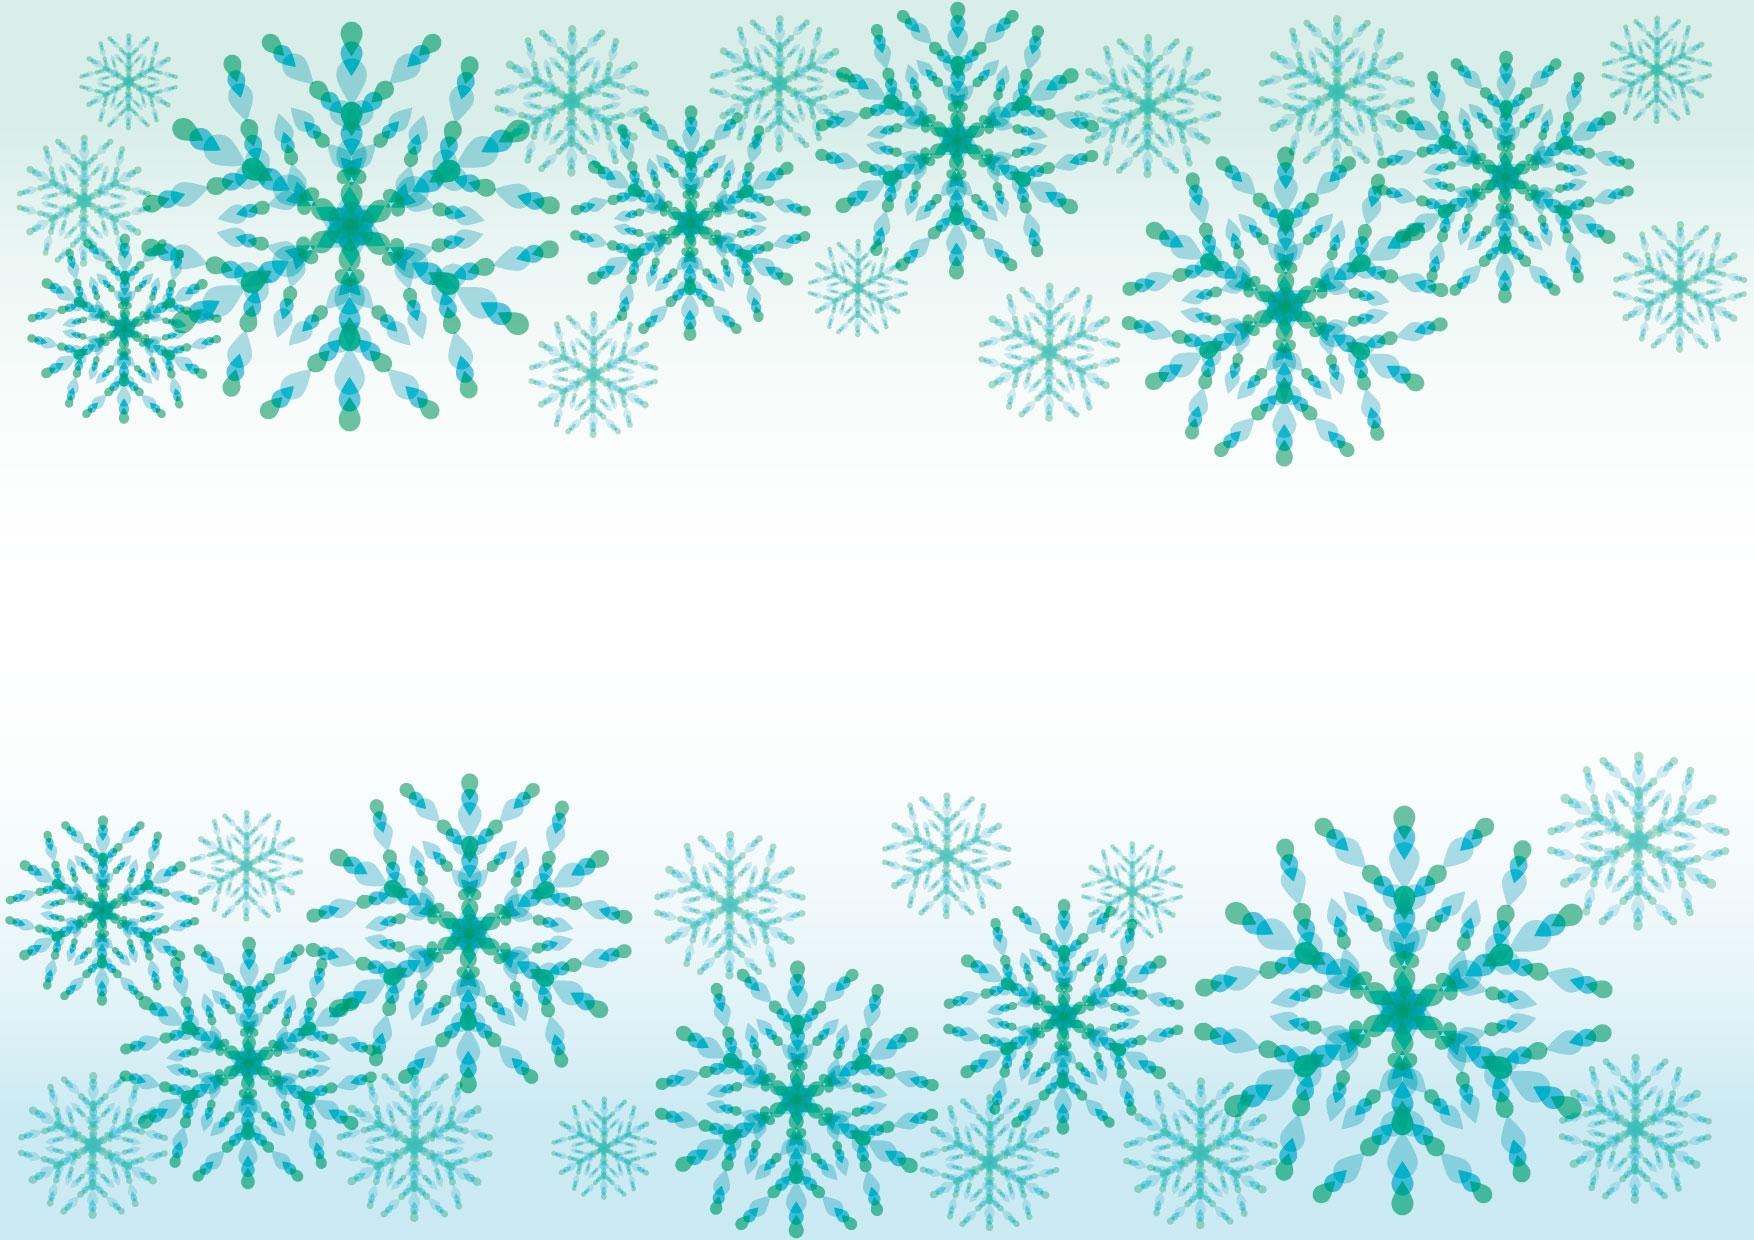 可愛いイラスト無料 雪の結晶 青 背景 Free Illustration Snowflakes Blue Background 公式 イラスト ダウンロード